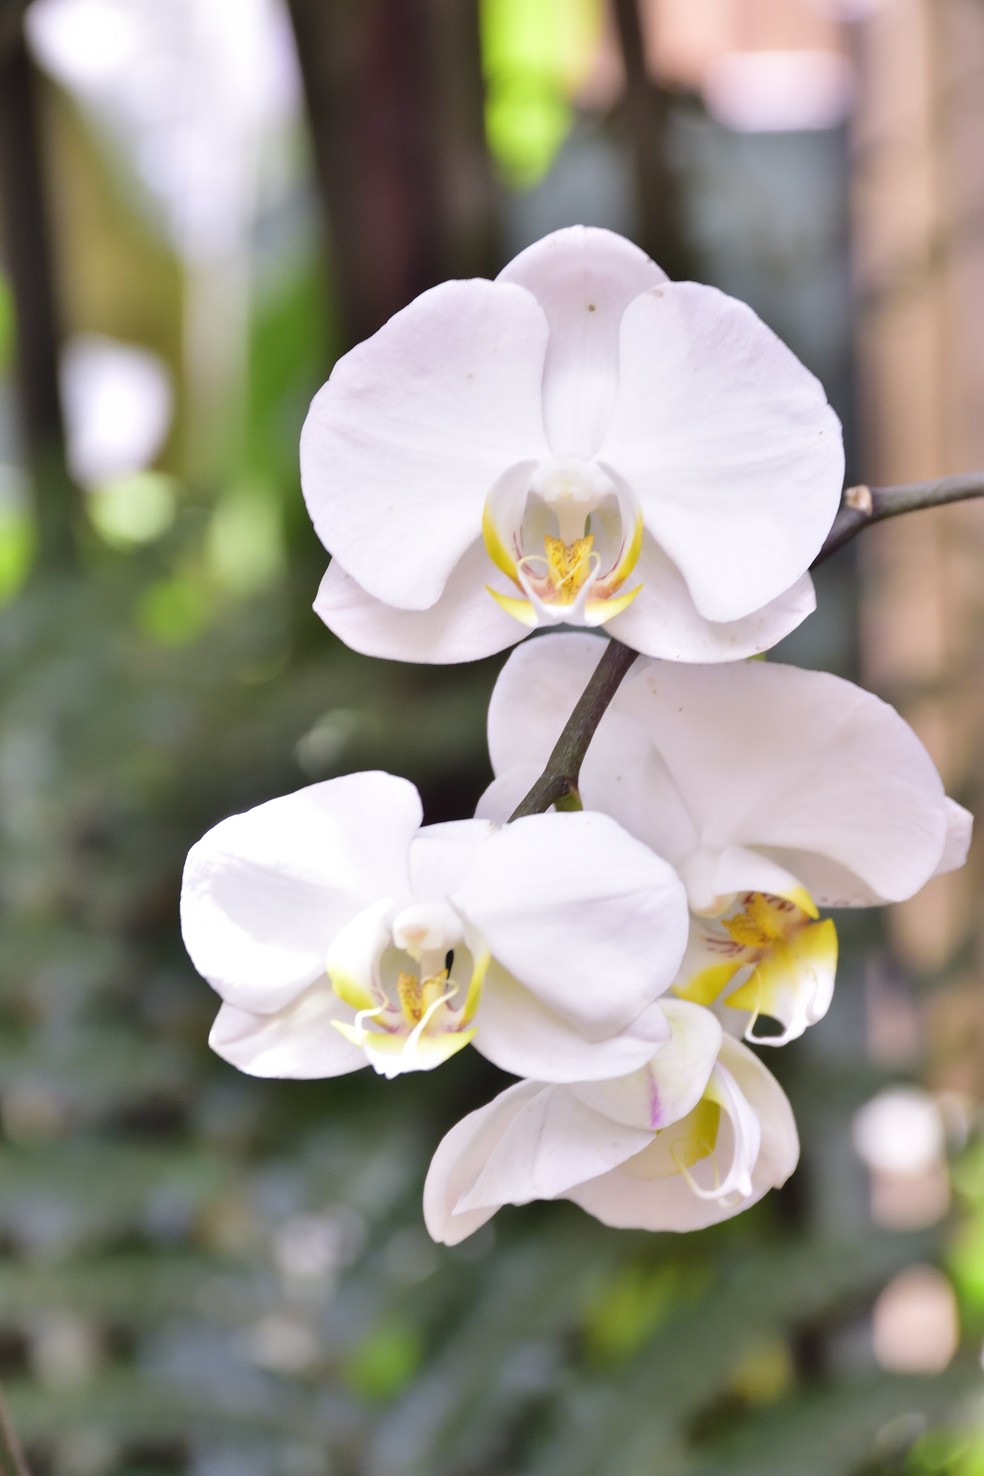 Dentre as muitas espécies de orquídeas, várias apresentam a coloração branca, associada à paz — Foto: Albino Junior 83 / Wikimedia Commons